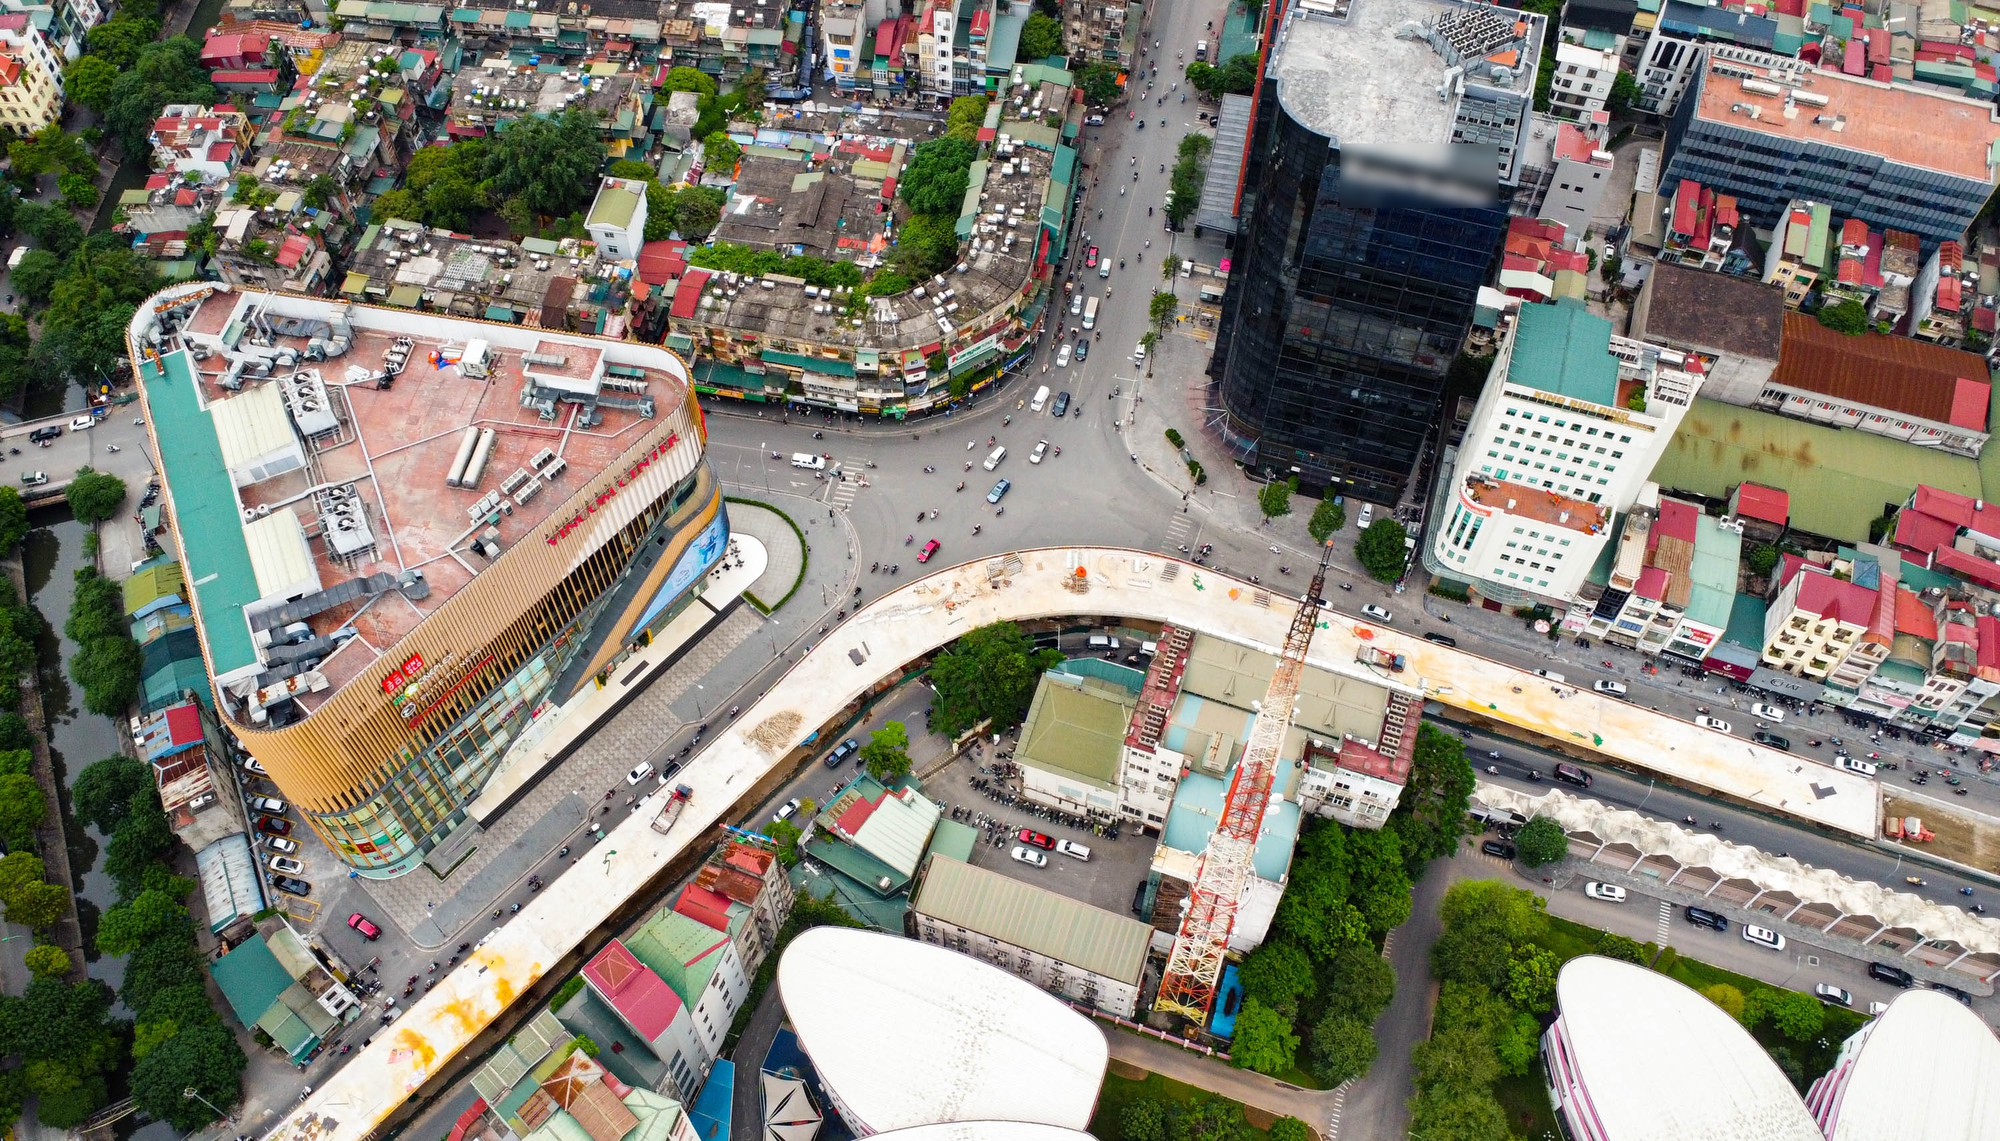 Hình hài cầu vượt chữ C 150 tỉ đồng sắp thông xe ở Hà Nội - Ảnh 1.